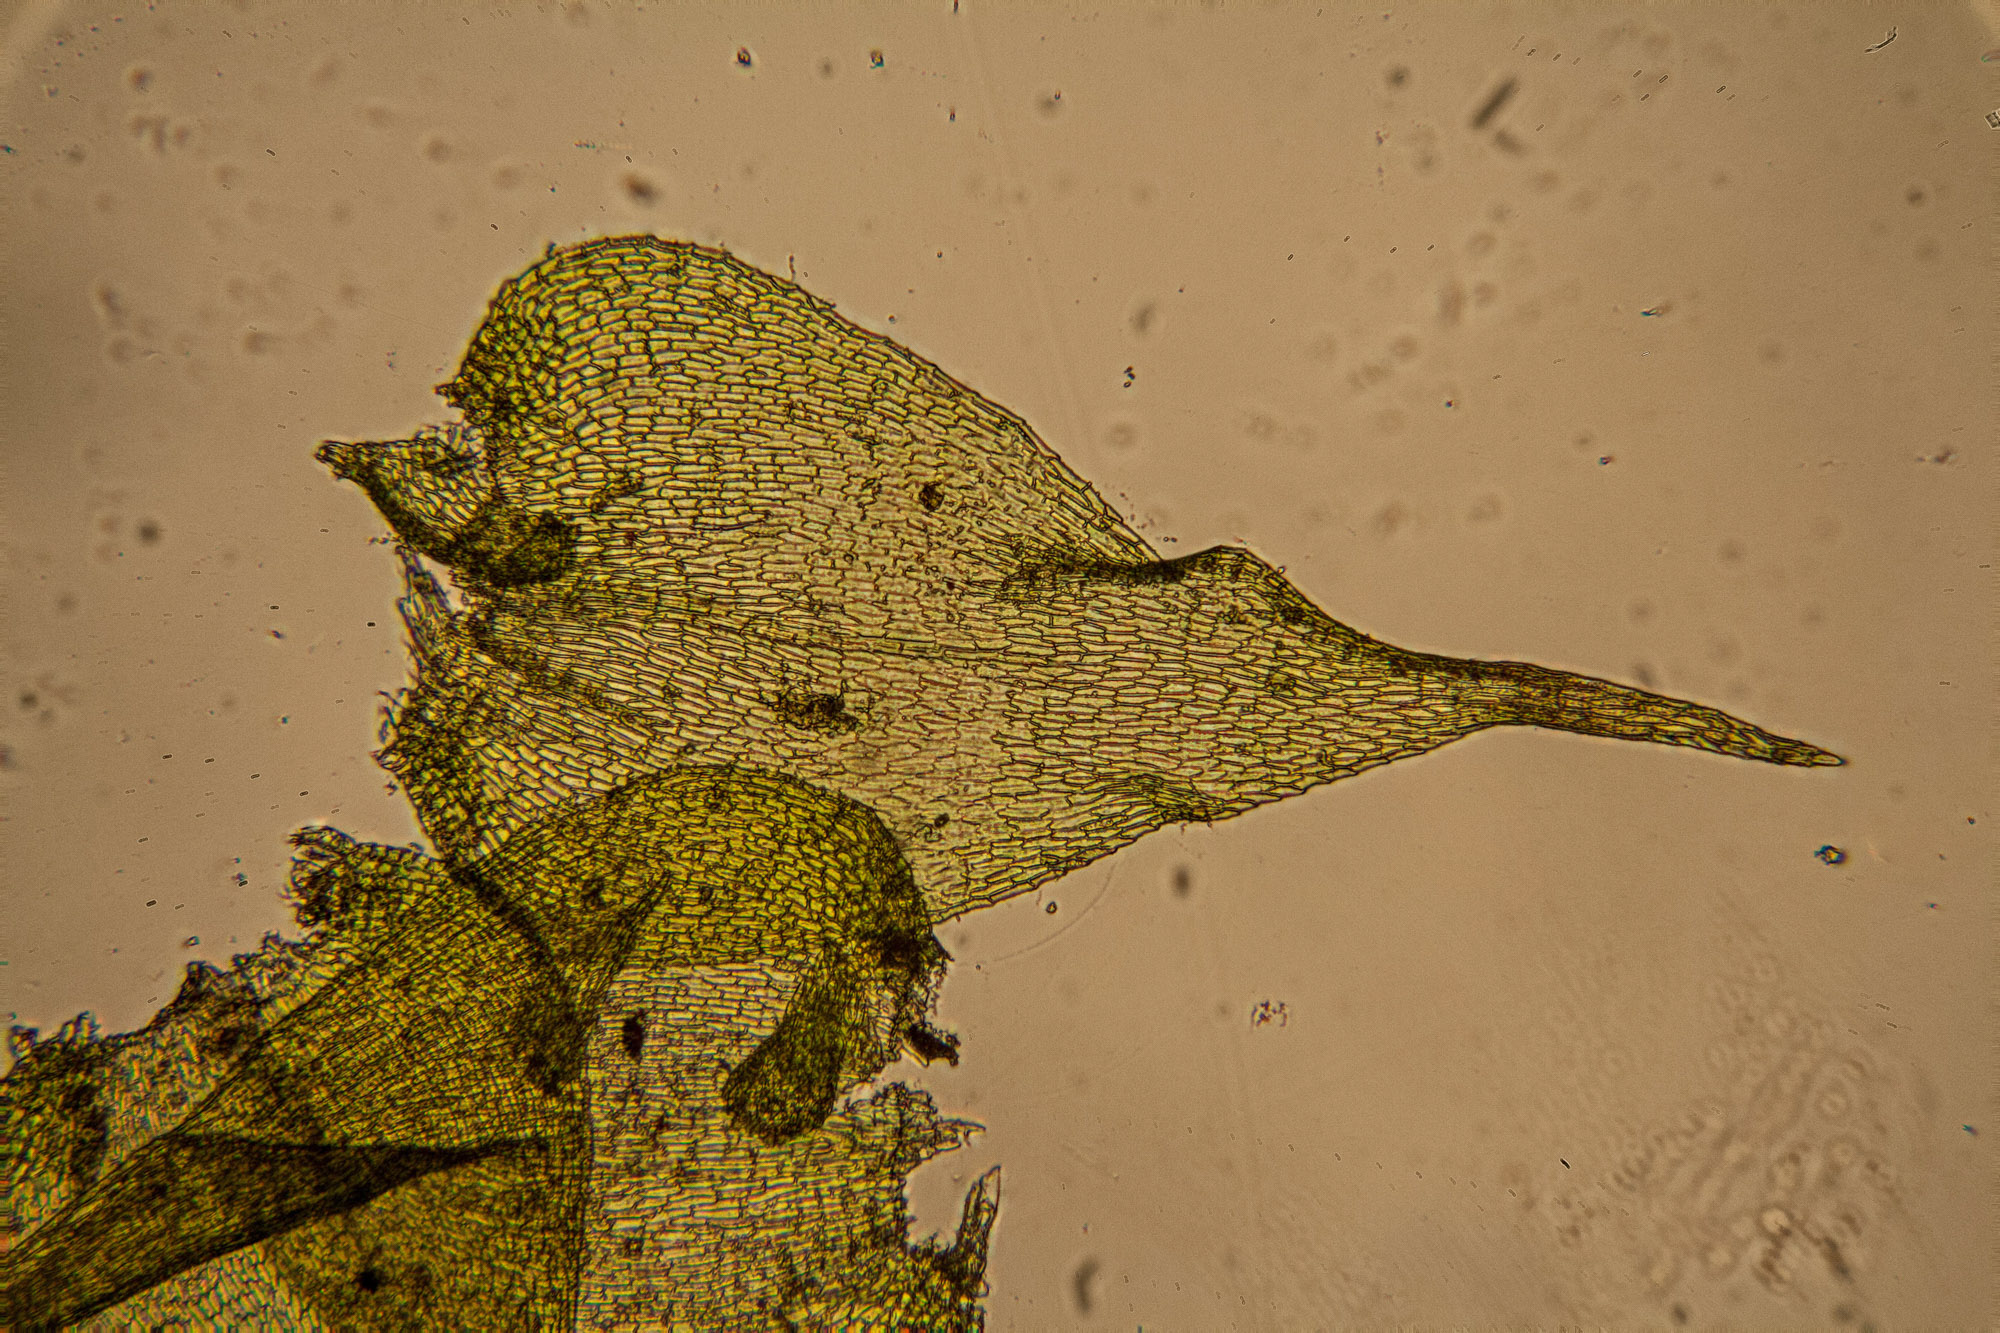 https://ohiomosslichen.org/moss-campylium-chrysophyllum/